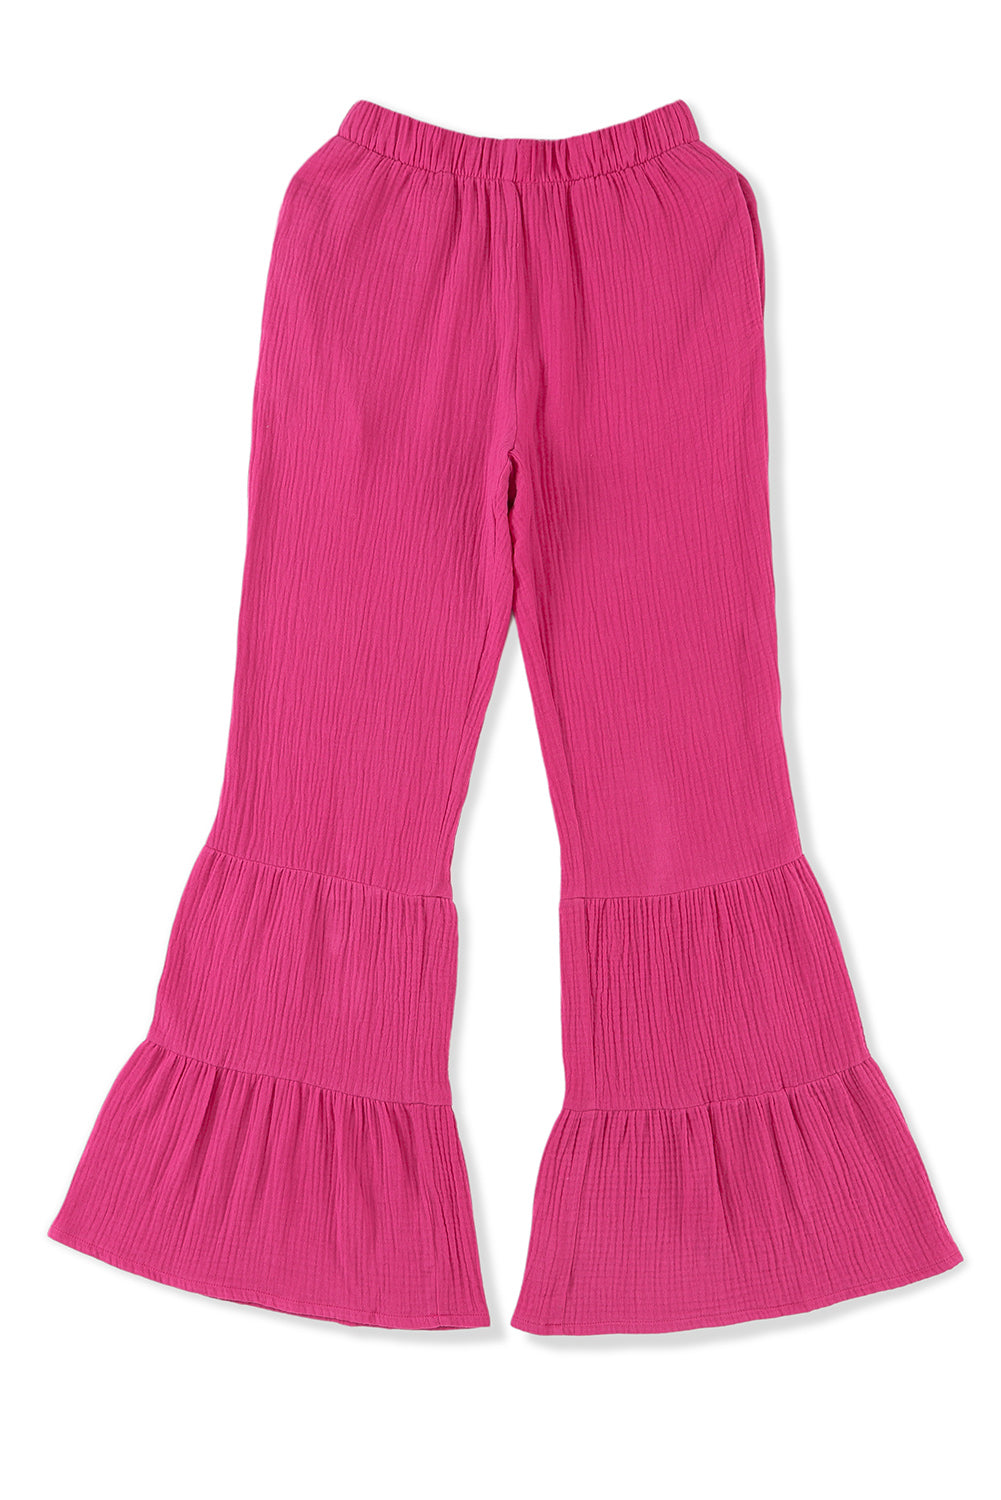 Pantaloni con fondo a campana con volant a vita alta testurizzati rosa